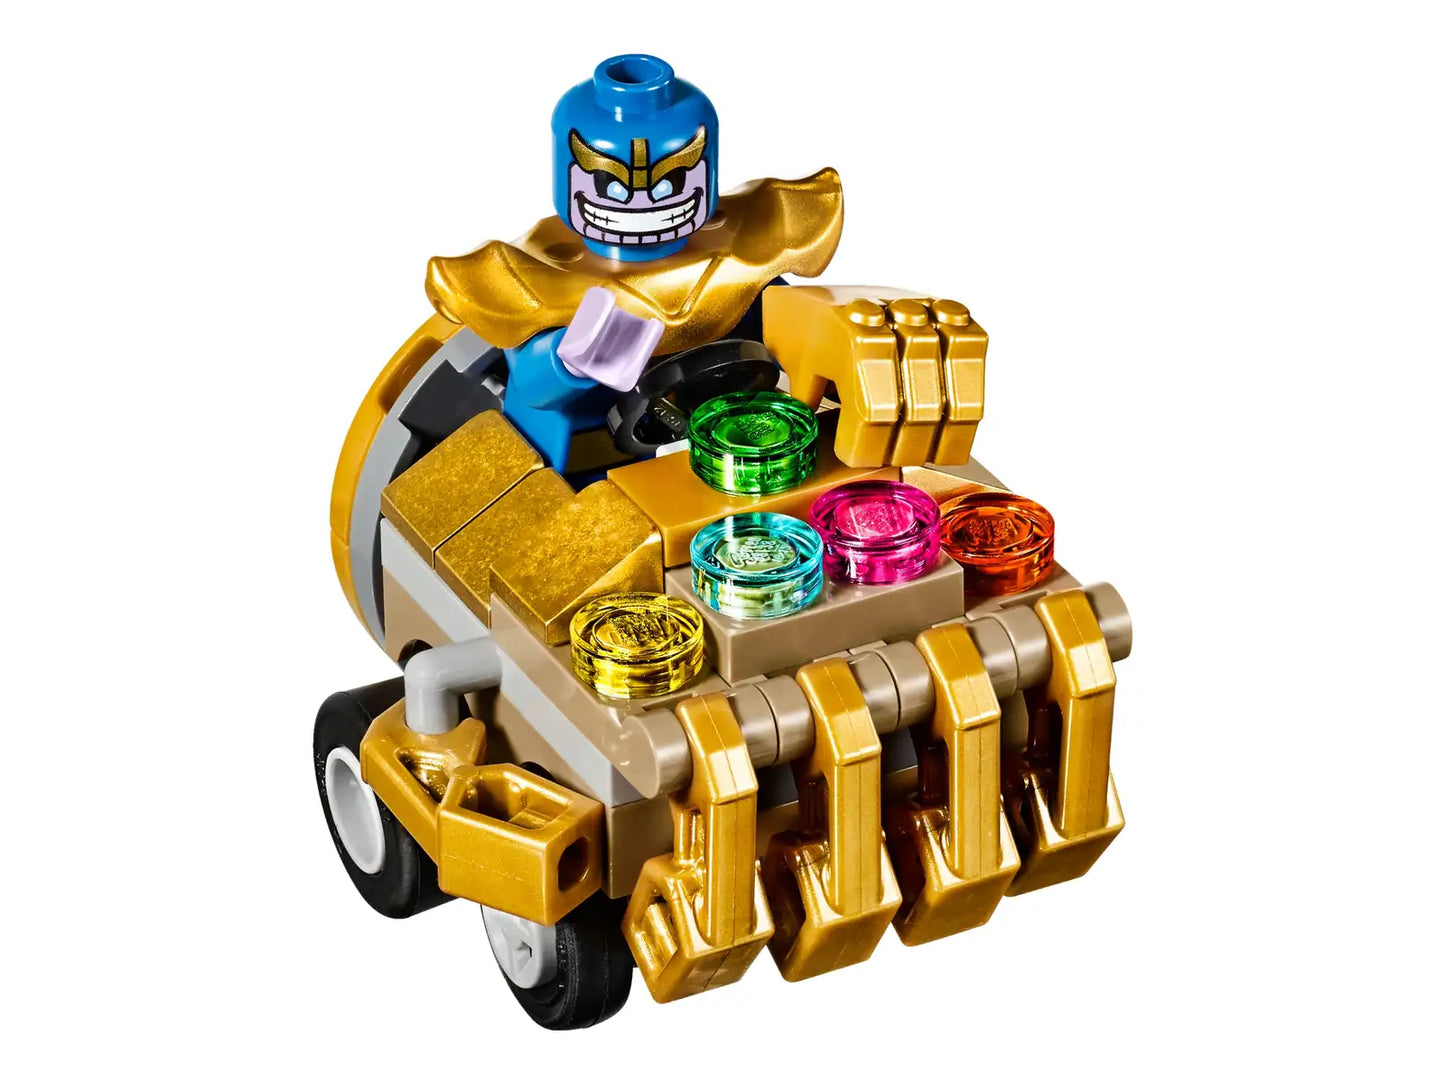 LEGO Mighty Micros: Iron Man vs. Thanos 76072